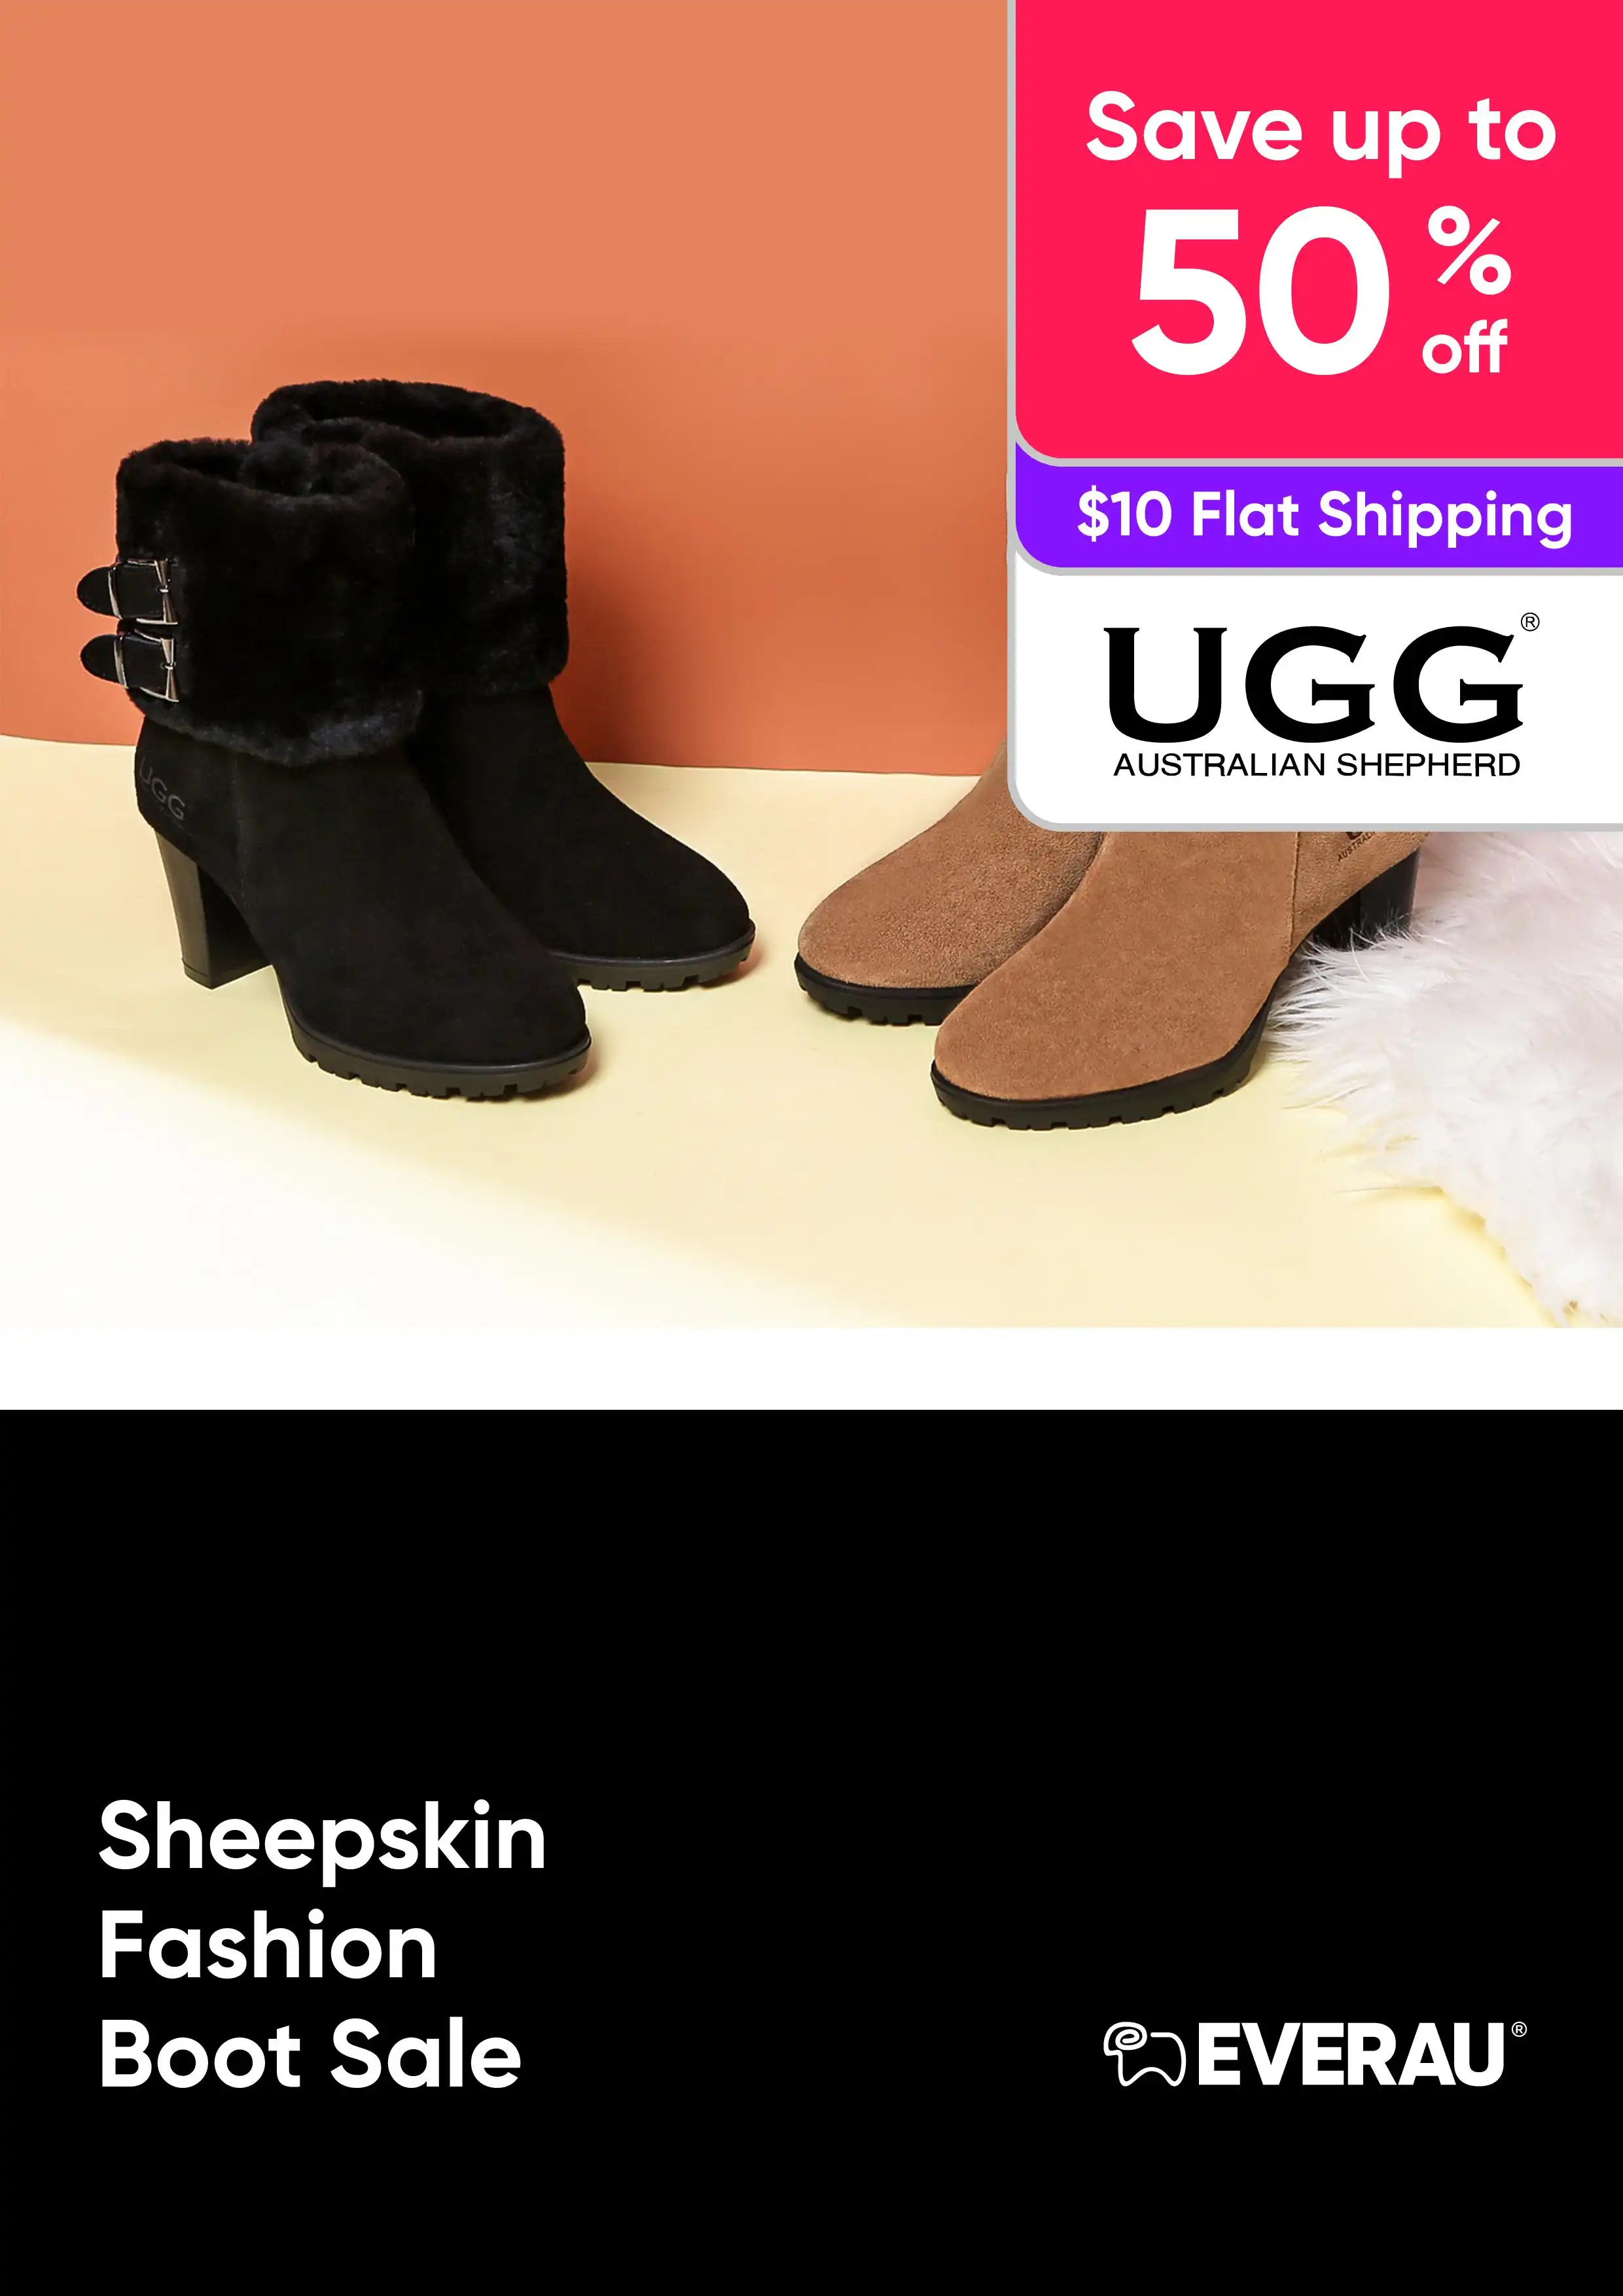 Sheepskin Fashion Boot Sale - UGG Australian Shepherd  - Save up 50%